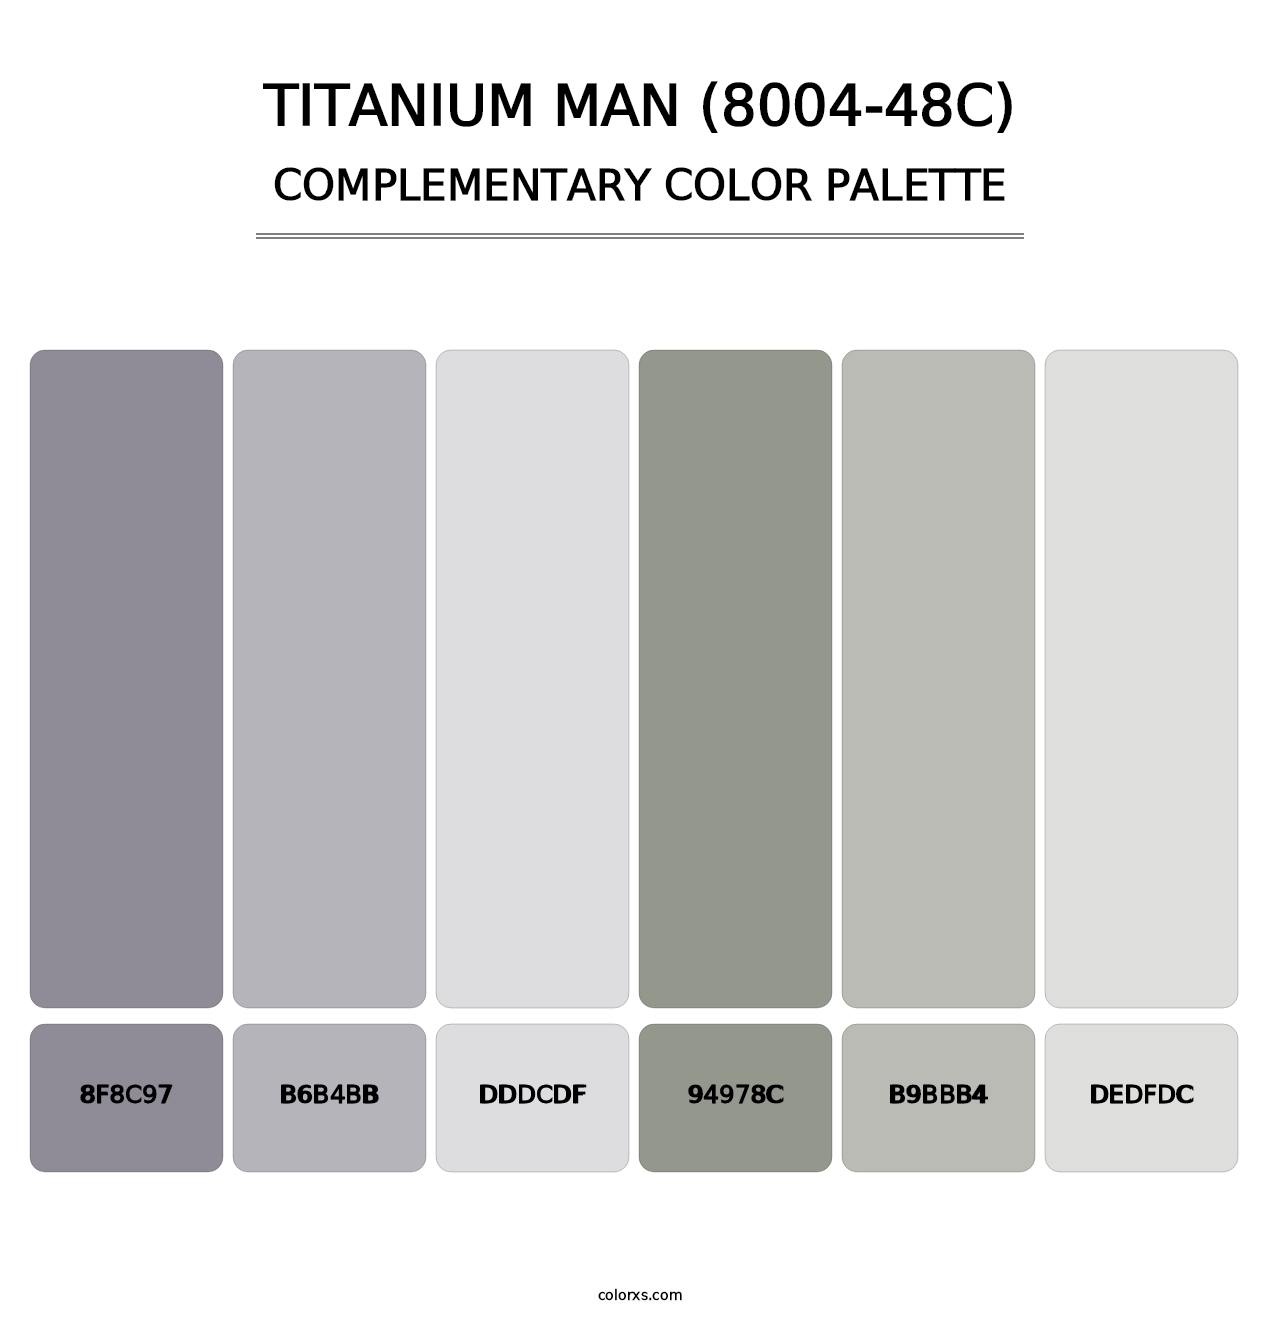 Titanium Man (8004-48C) - Complementary Color Palette